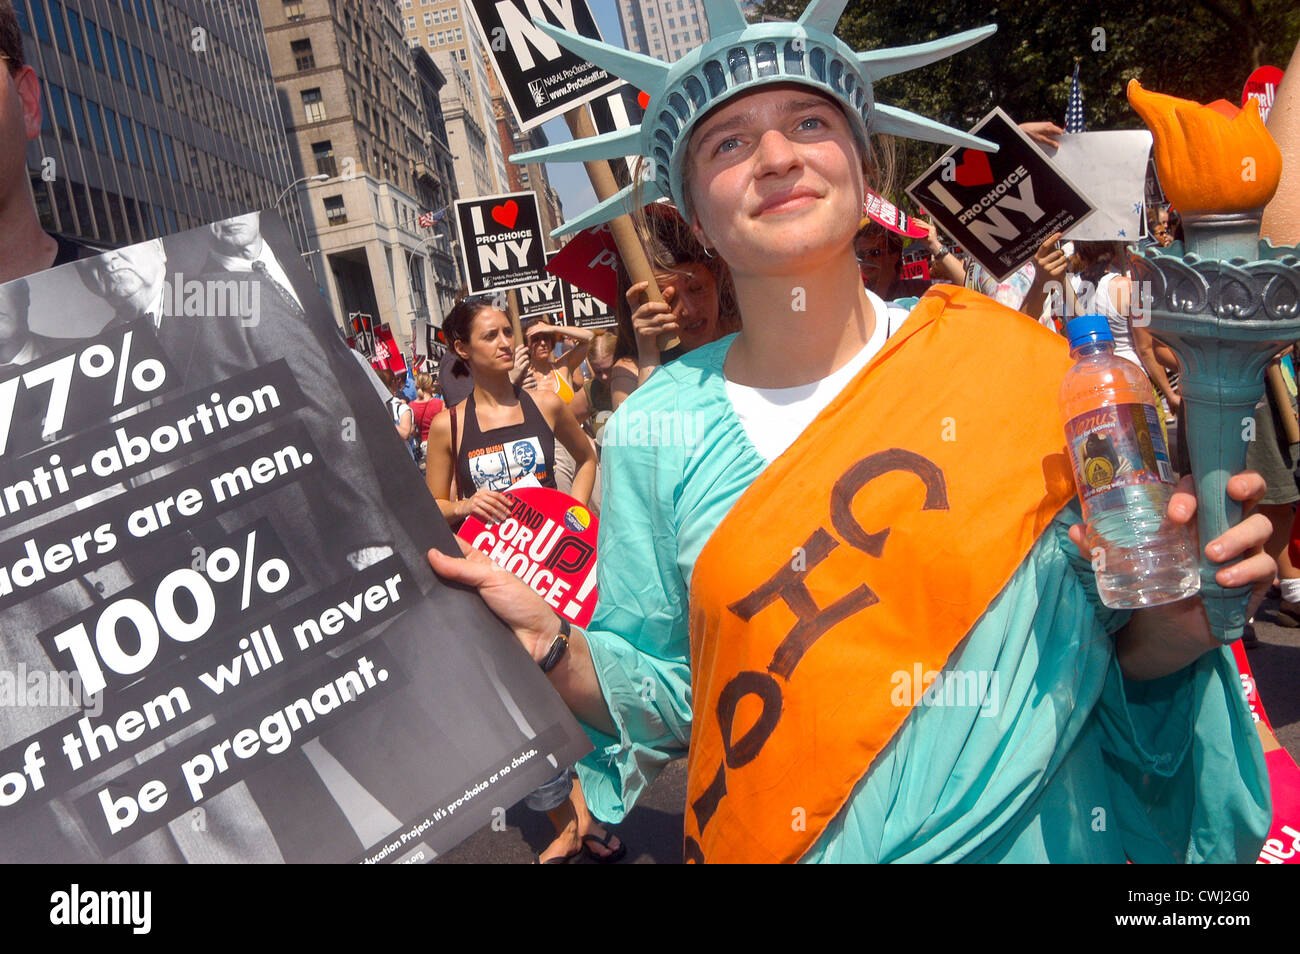 New York, NY - Abortion rights advocates rally at New York City Hall Stock Photo